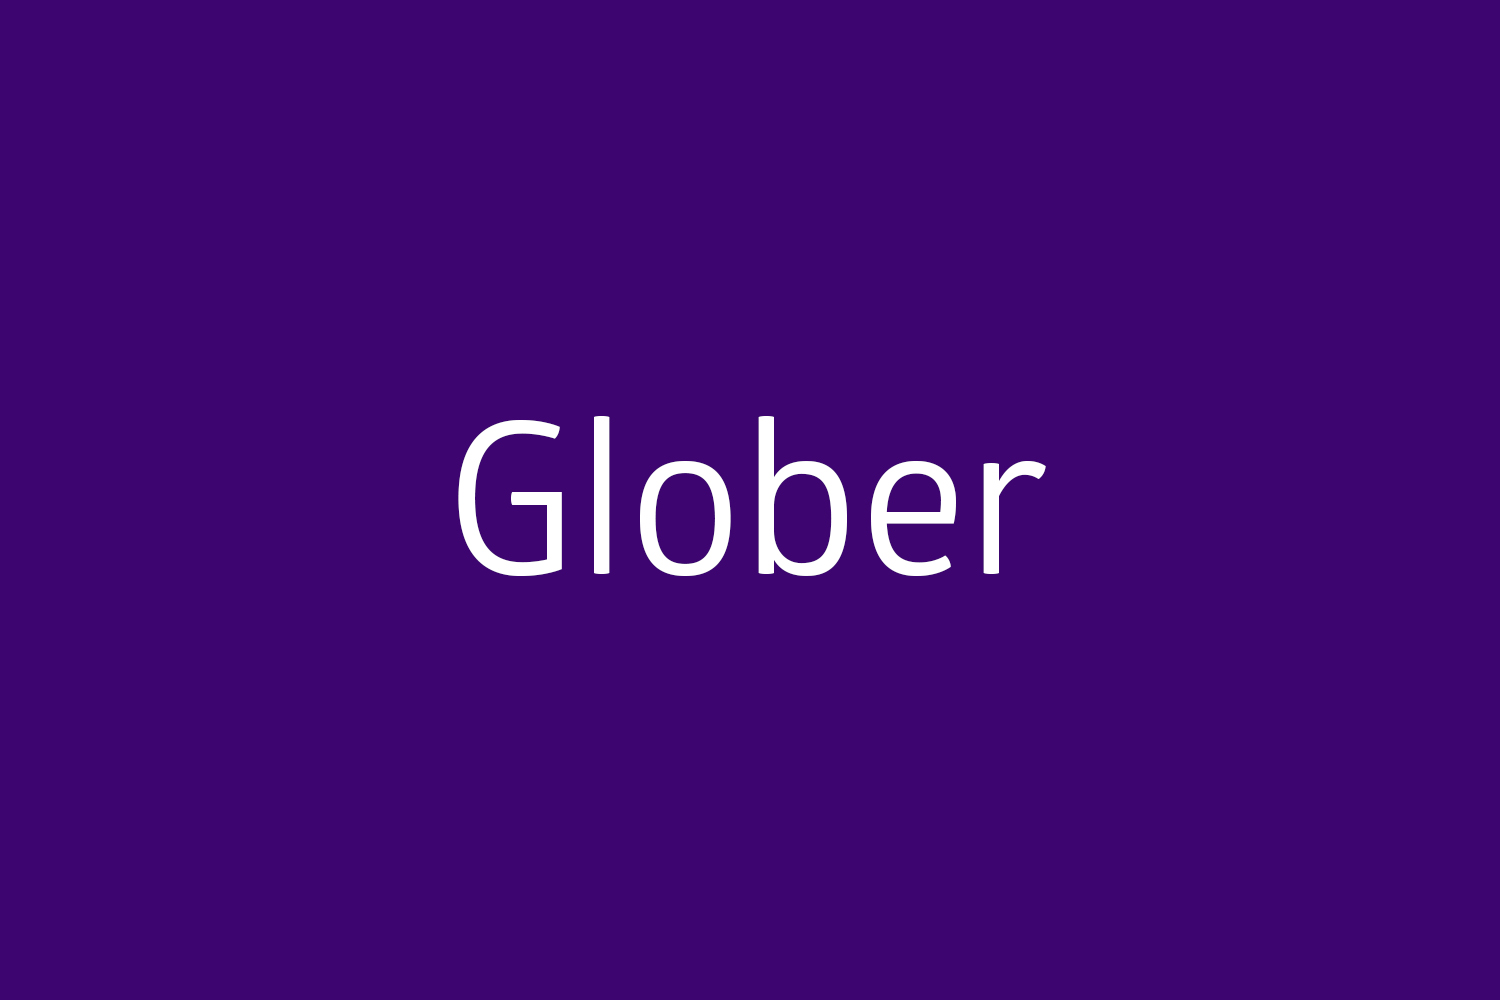 Glober